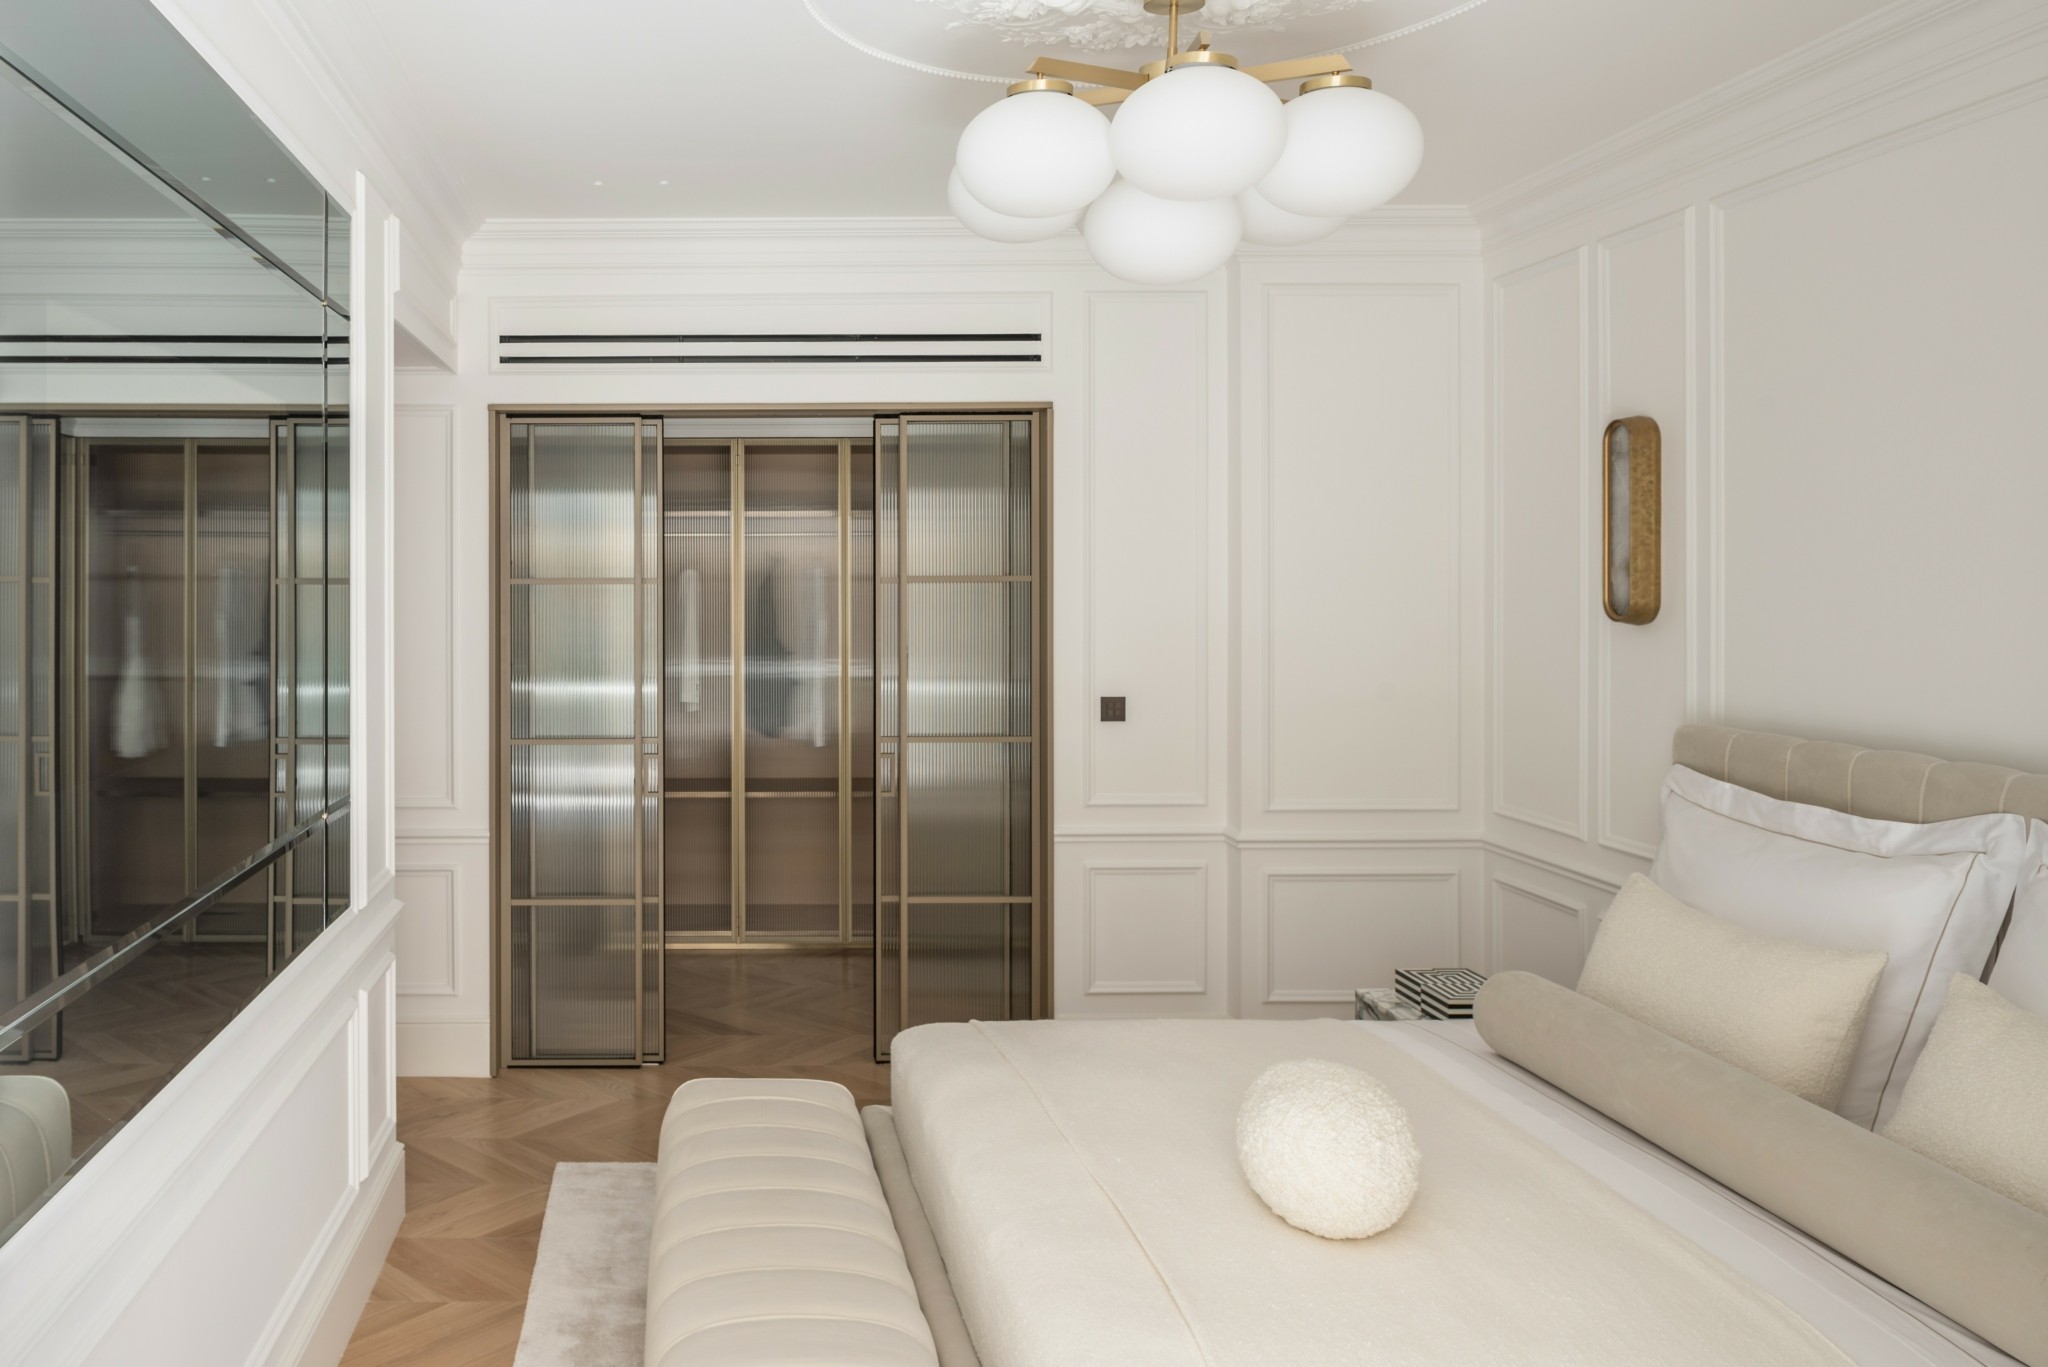 Ένα εντυπωσιακό διαμέρισμα στην Hρώδου Αττικού δίπλα στο Προεδρικό Μέγαρο με κορυφαίο interior design